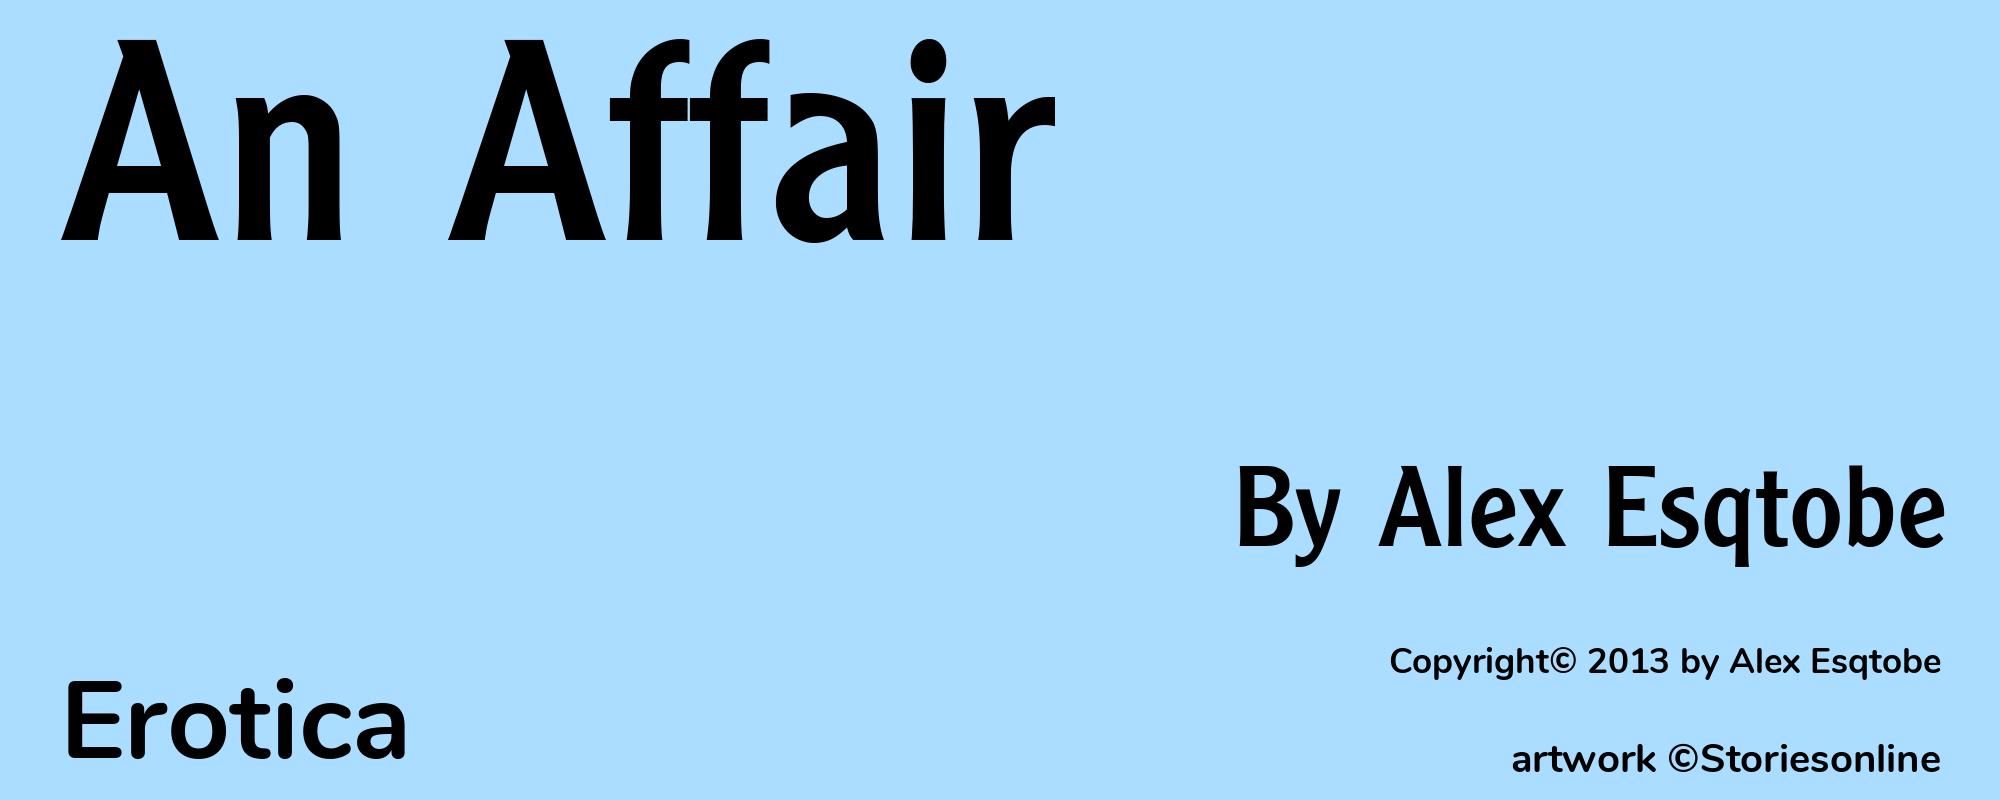 An Affair - Cover